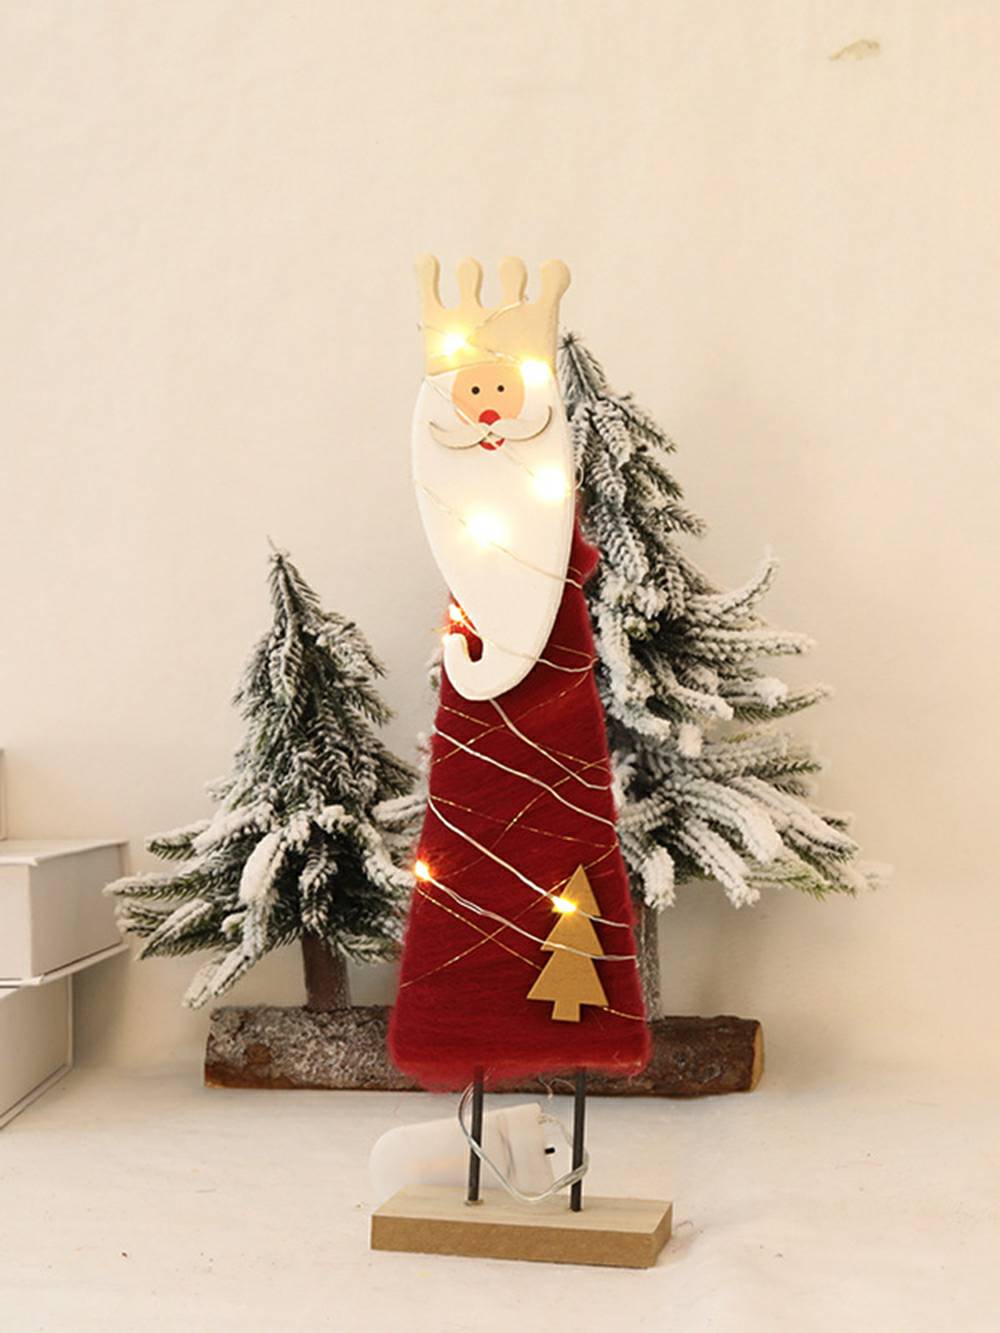 Śliczna, filcowa ozdoba Świętego Mikołaja z łosiem i światełkami